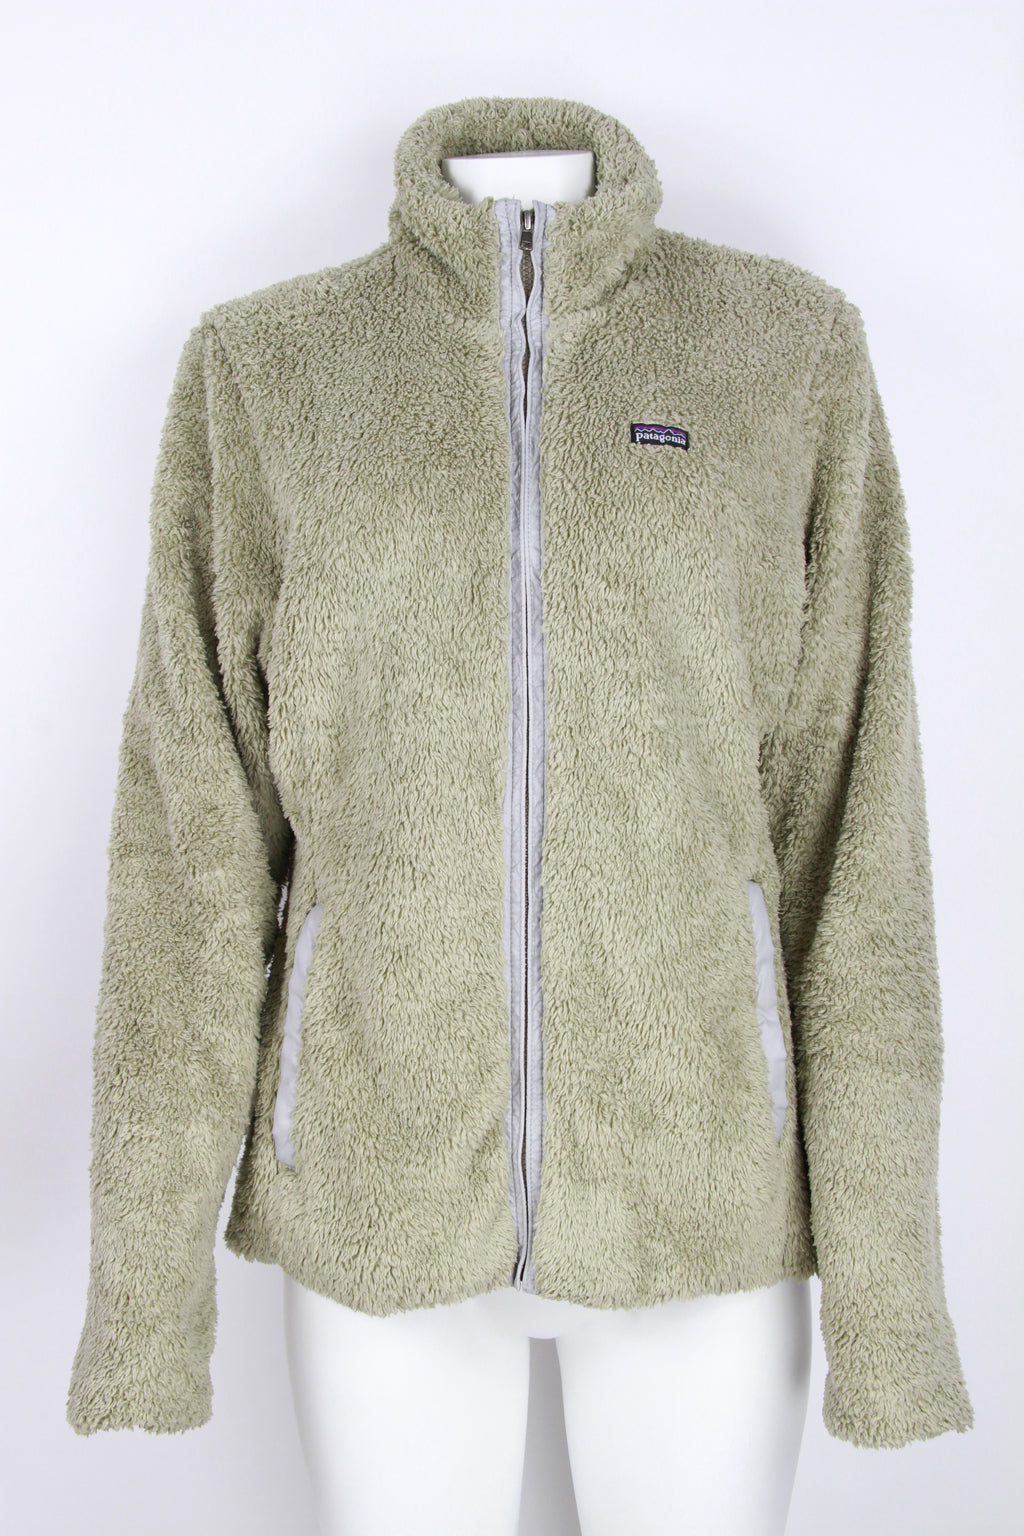 Vintage Women's Patagonia zip up fleece jacket - Beige - L — Pop Boutique  Online